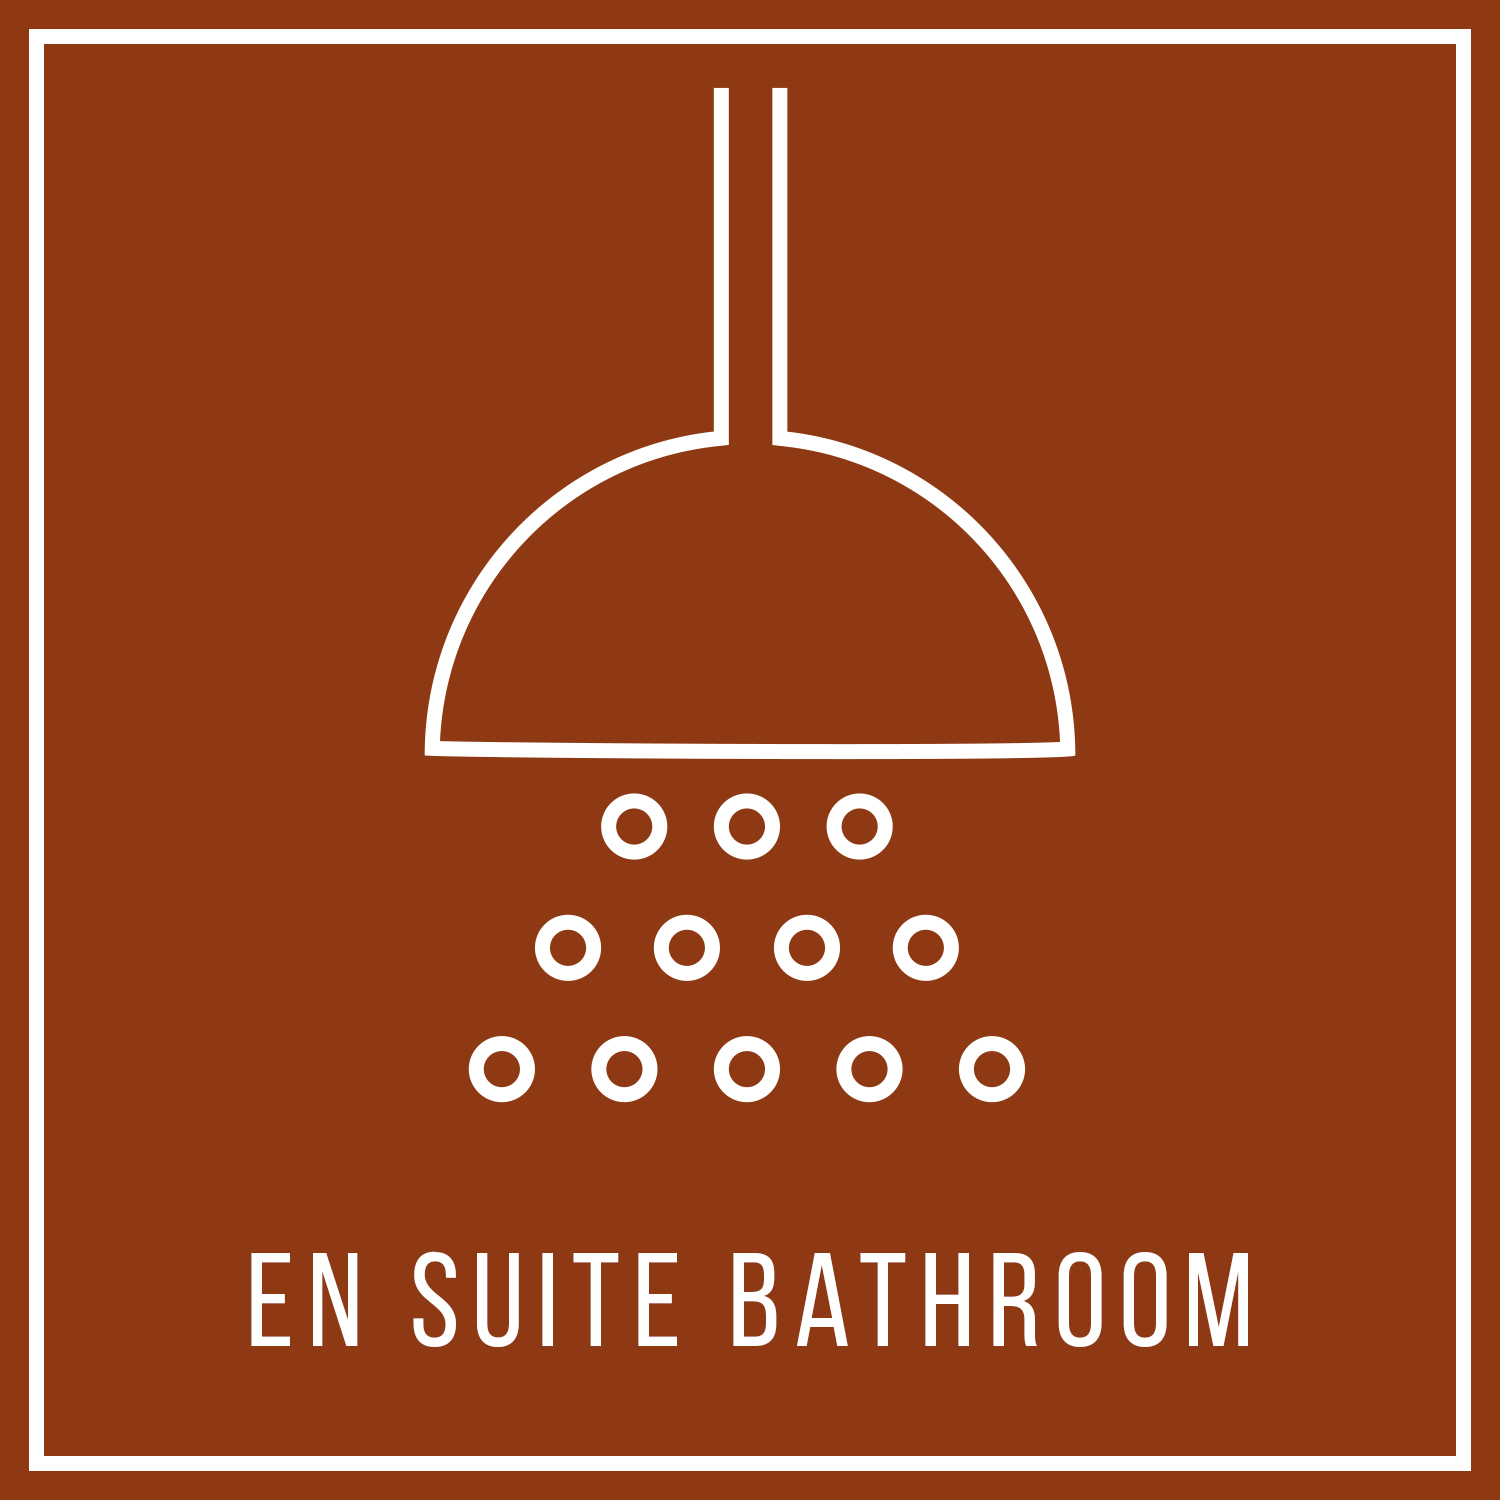 aya-kapadokya-room-features-terracotta-suite-square-en-suite-bathroom